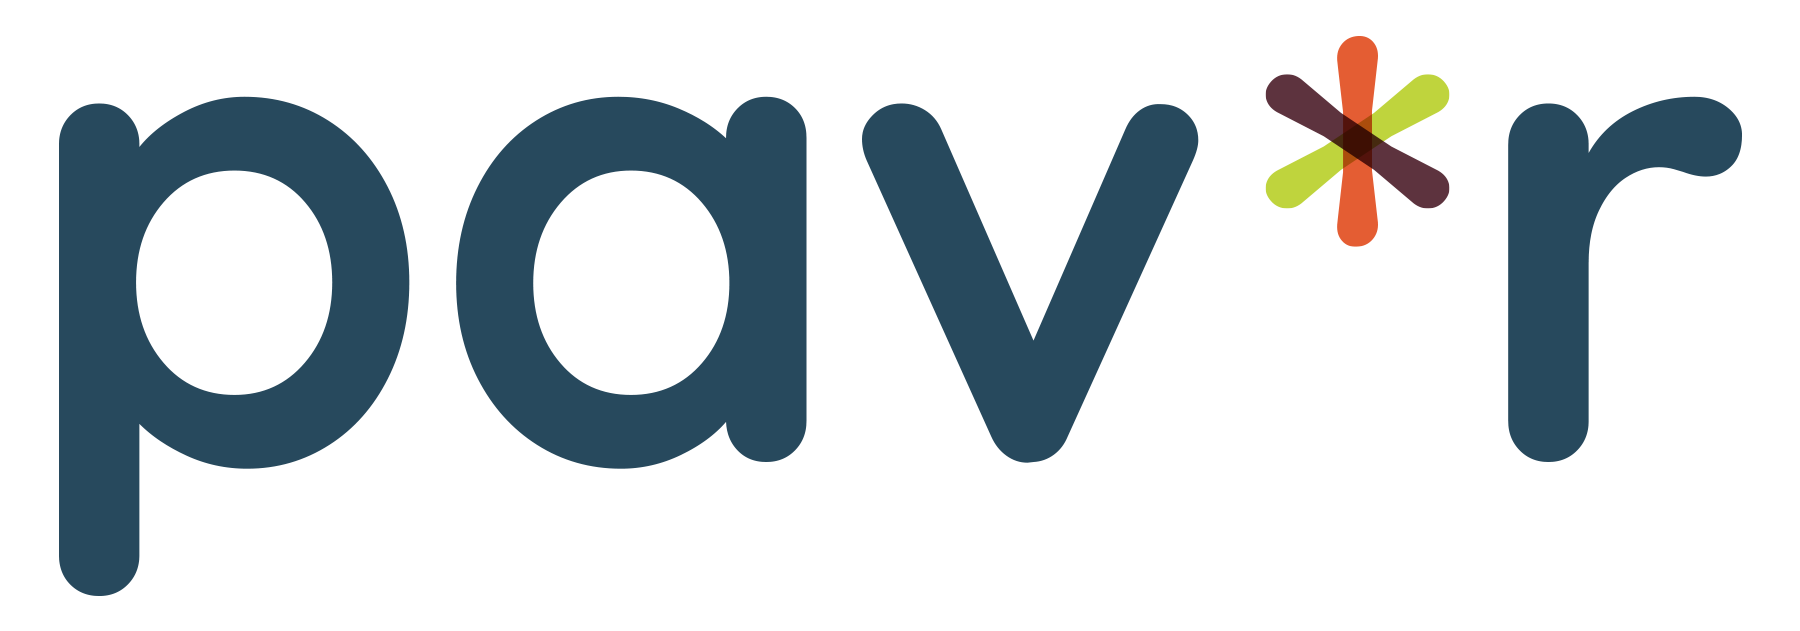 pav-r.md logo